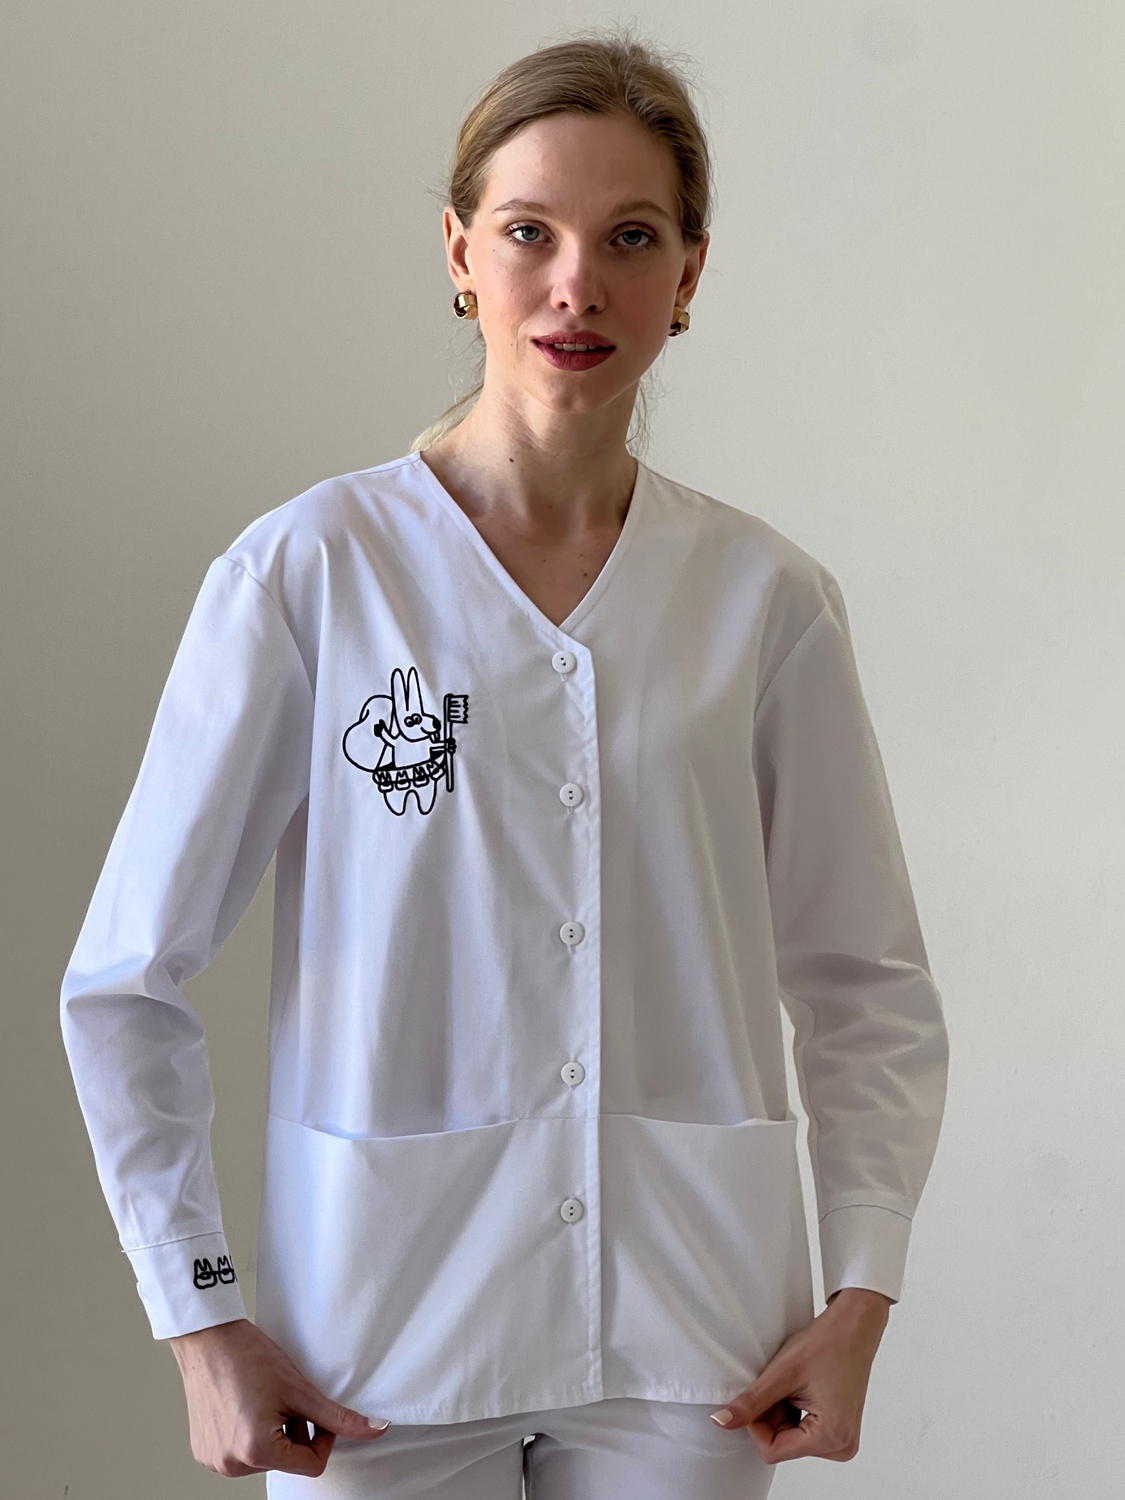 Жіноча медична куртка 24-02 з вишивкою для стоматолога